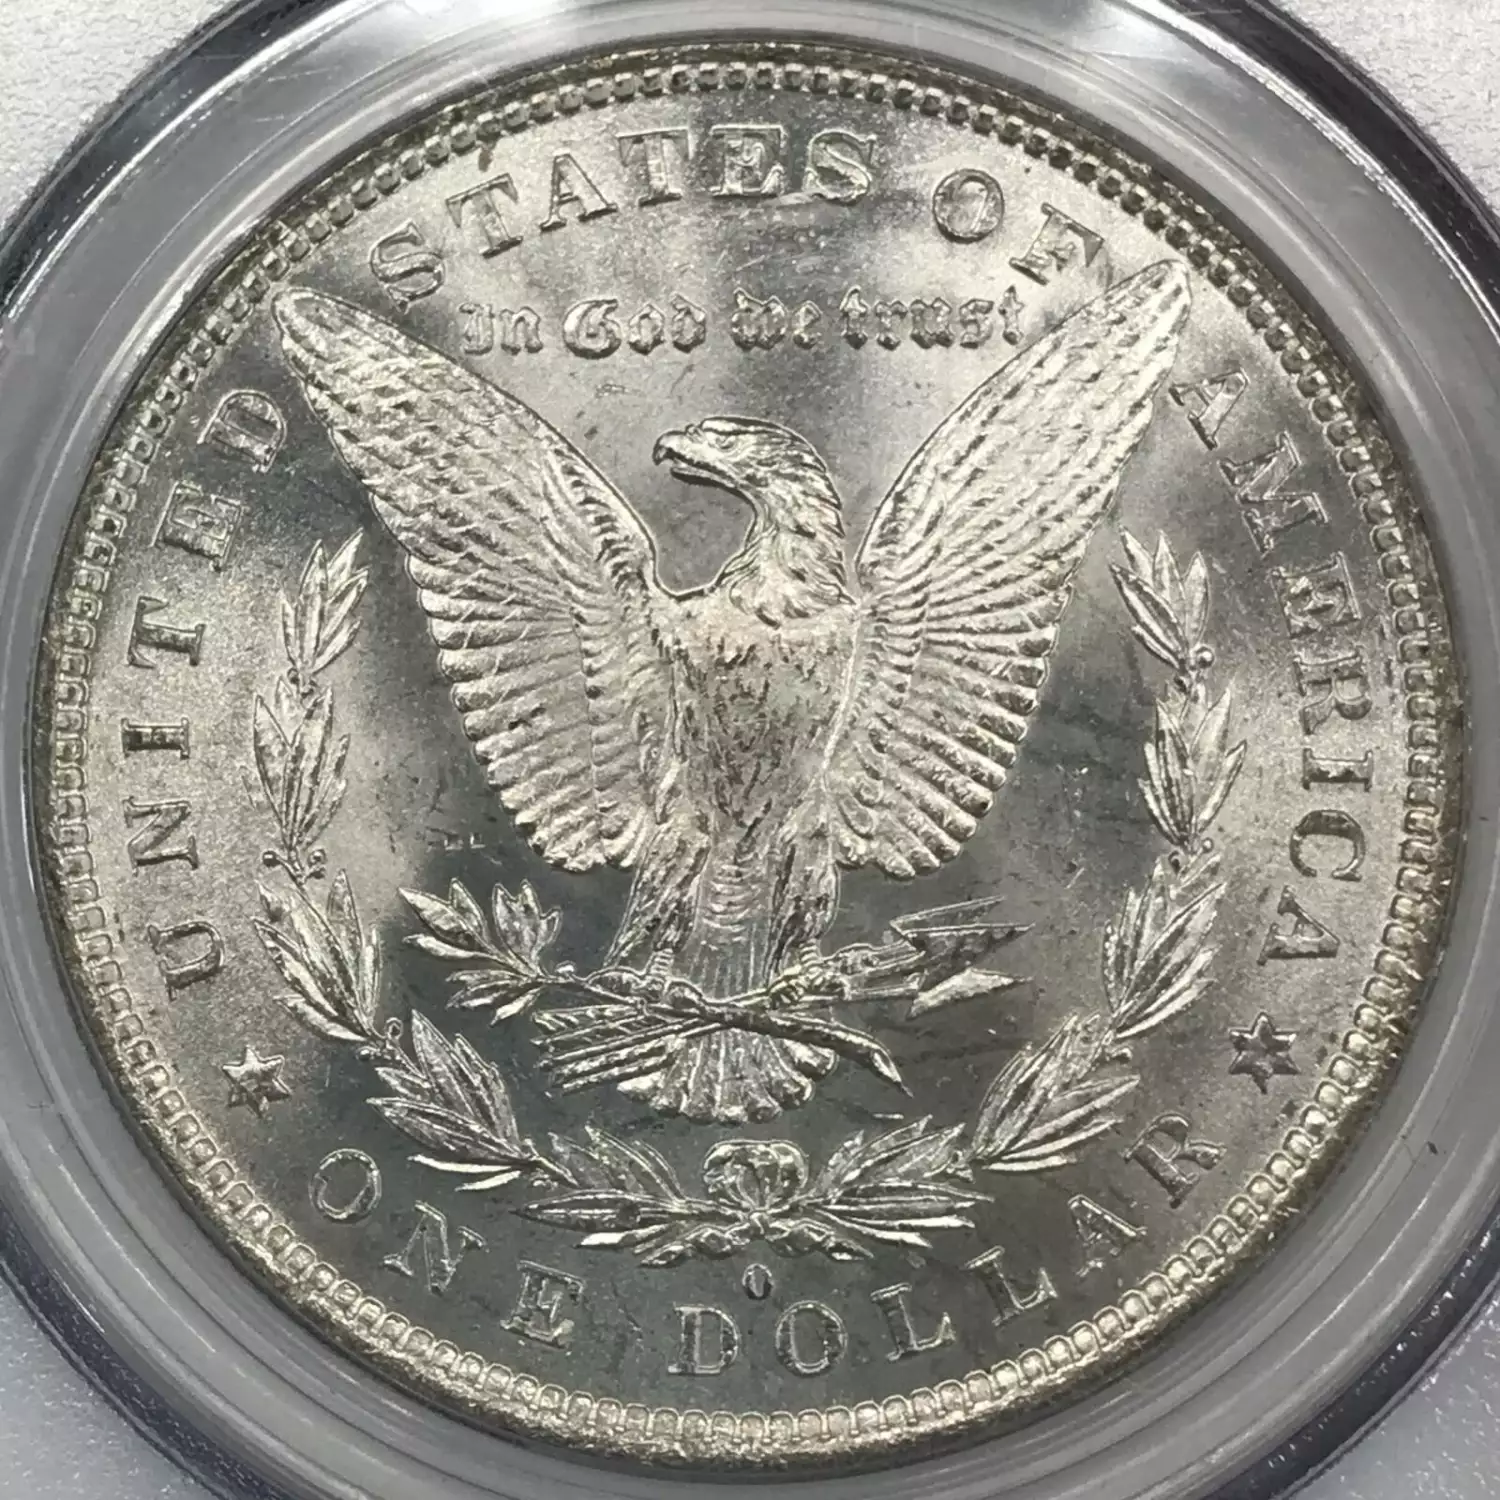 1881-O $1 (3)